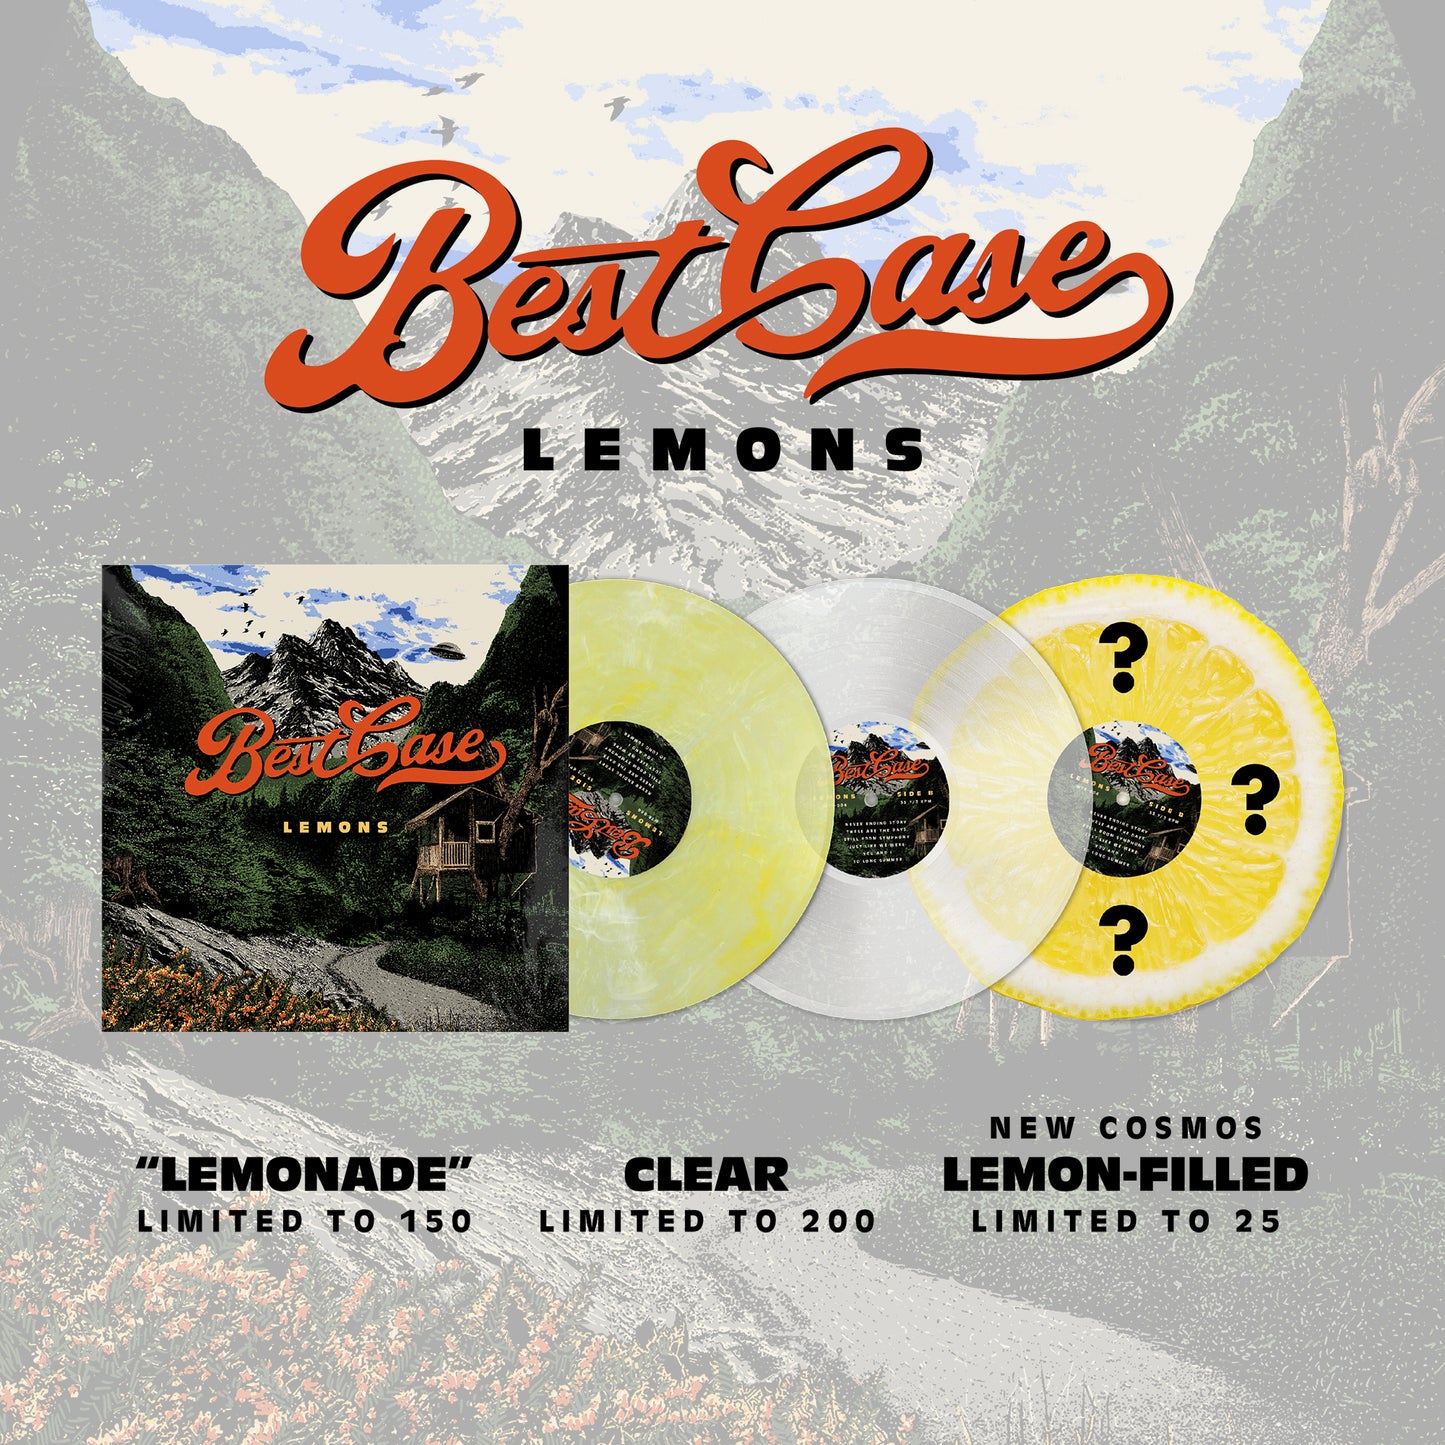 Best Case "Lemons" Vinyl LP